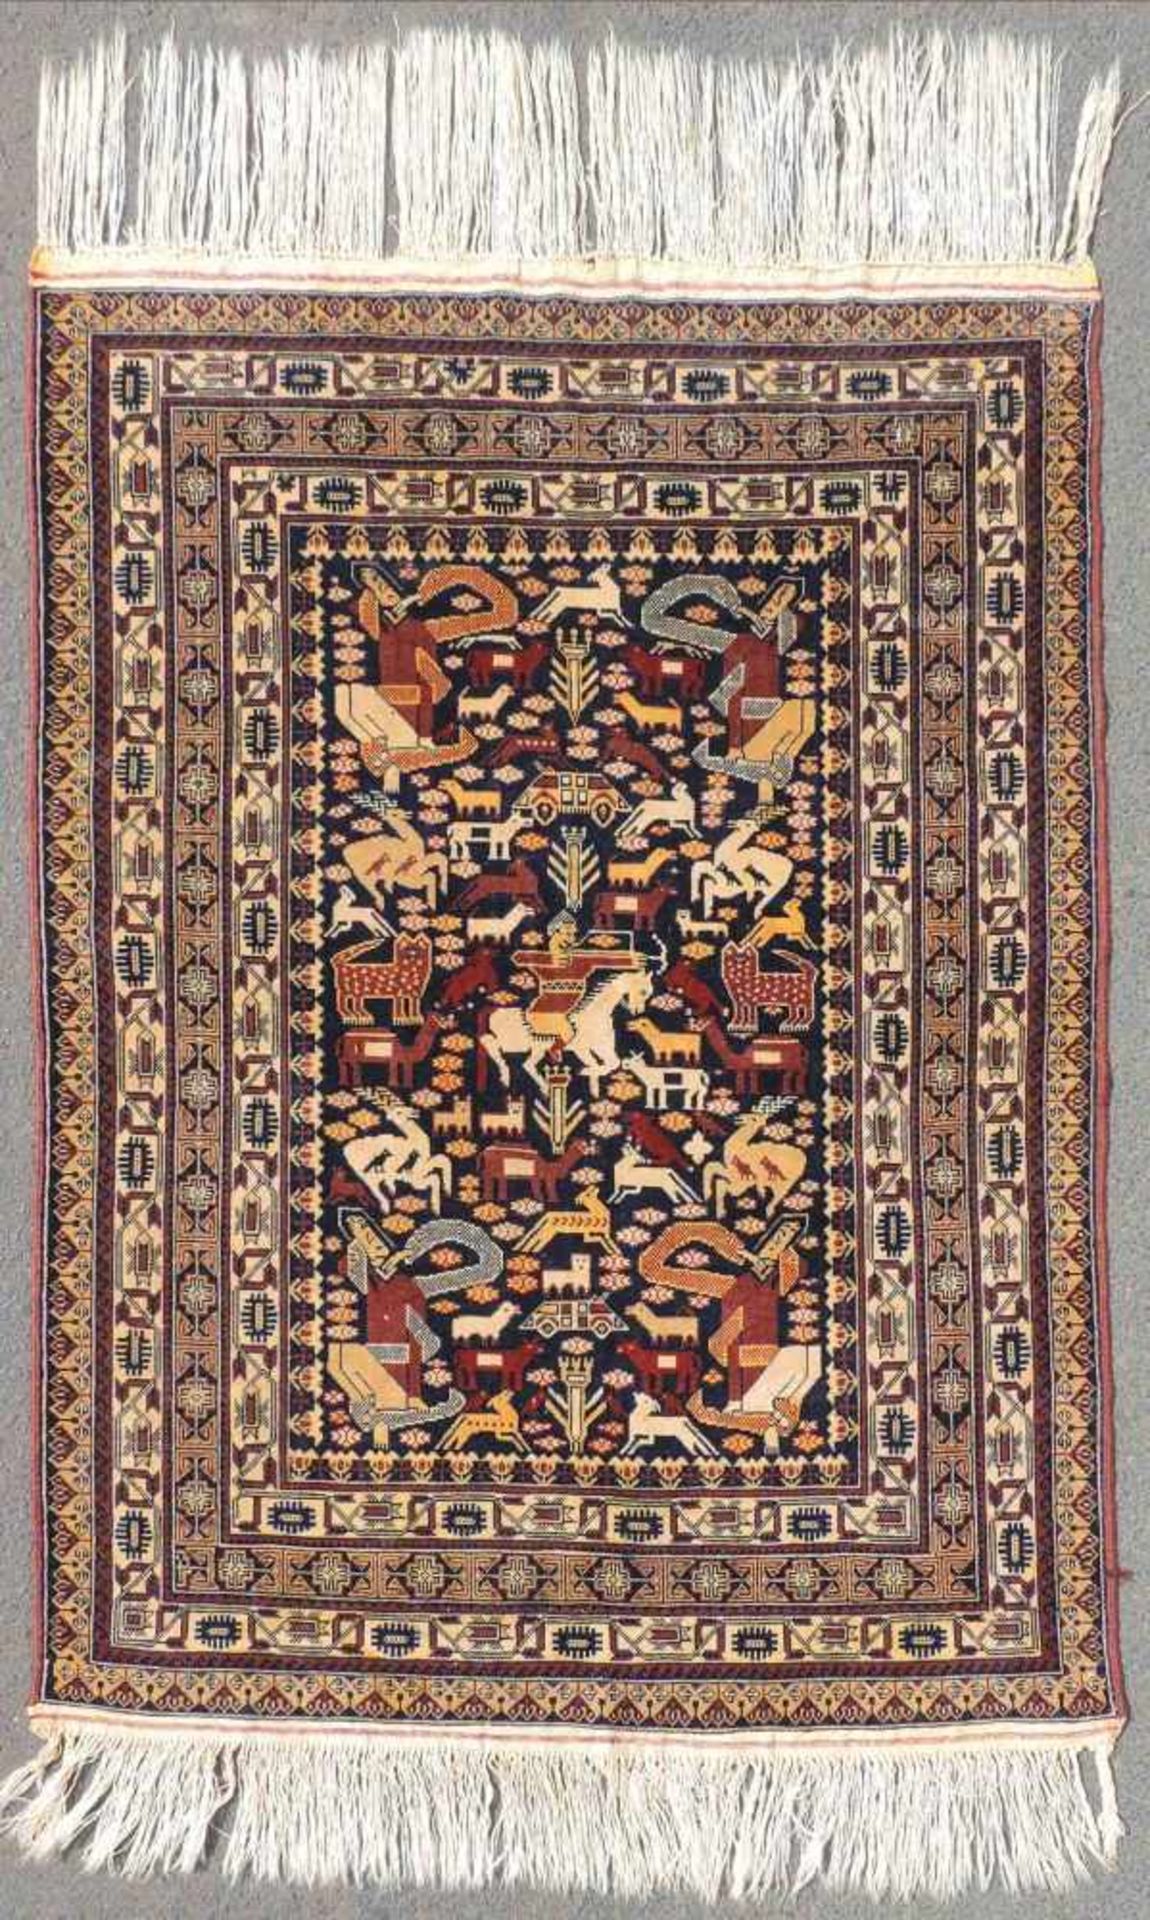 Mauri Stammesteppich. Afghanistan. Original Kriegsteppich aus der Zeit um 1980. 147 cm x 97 cm.